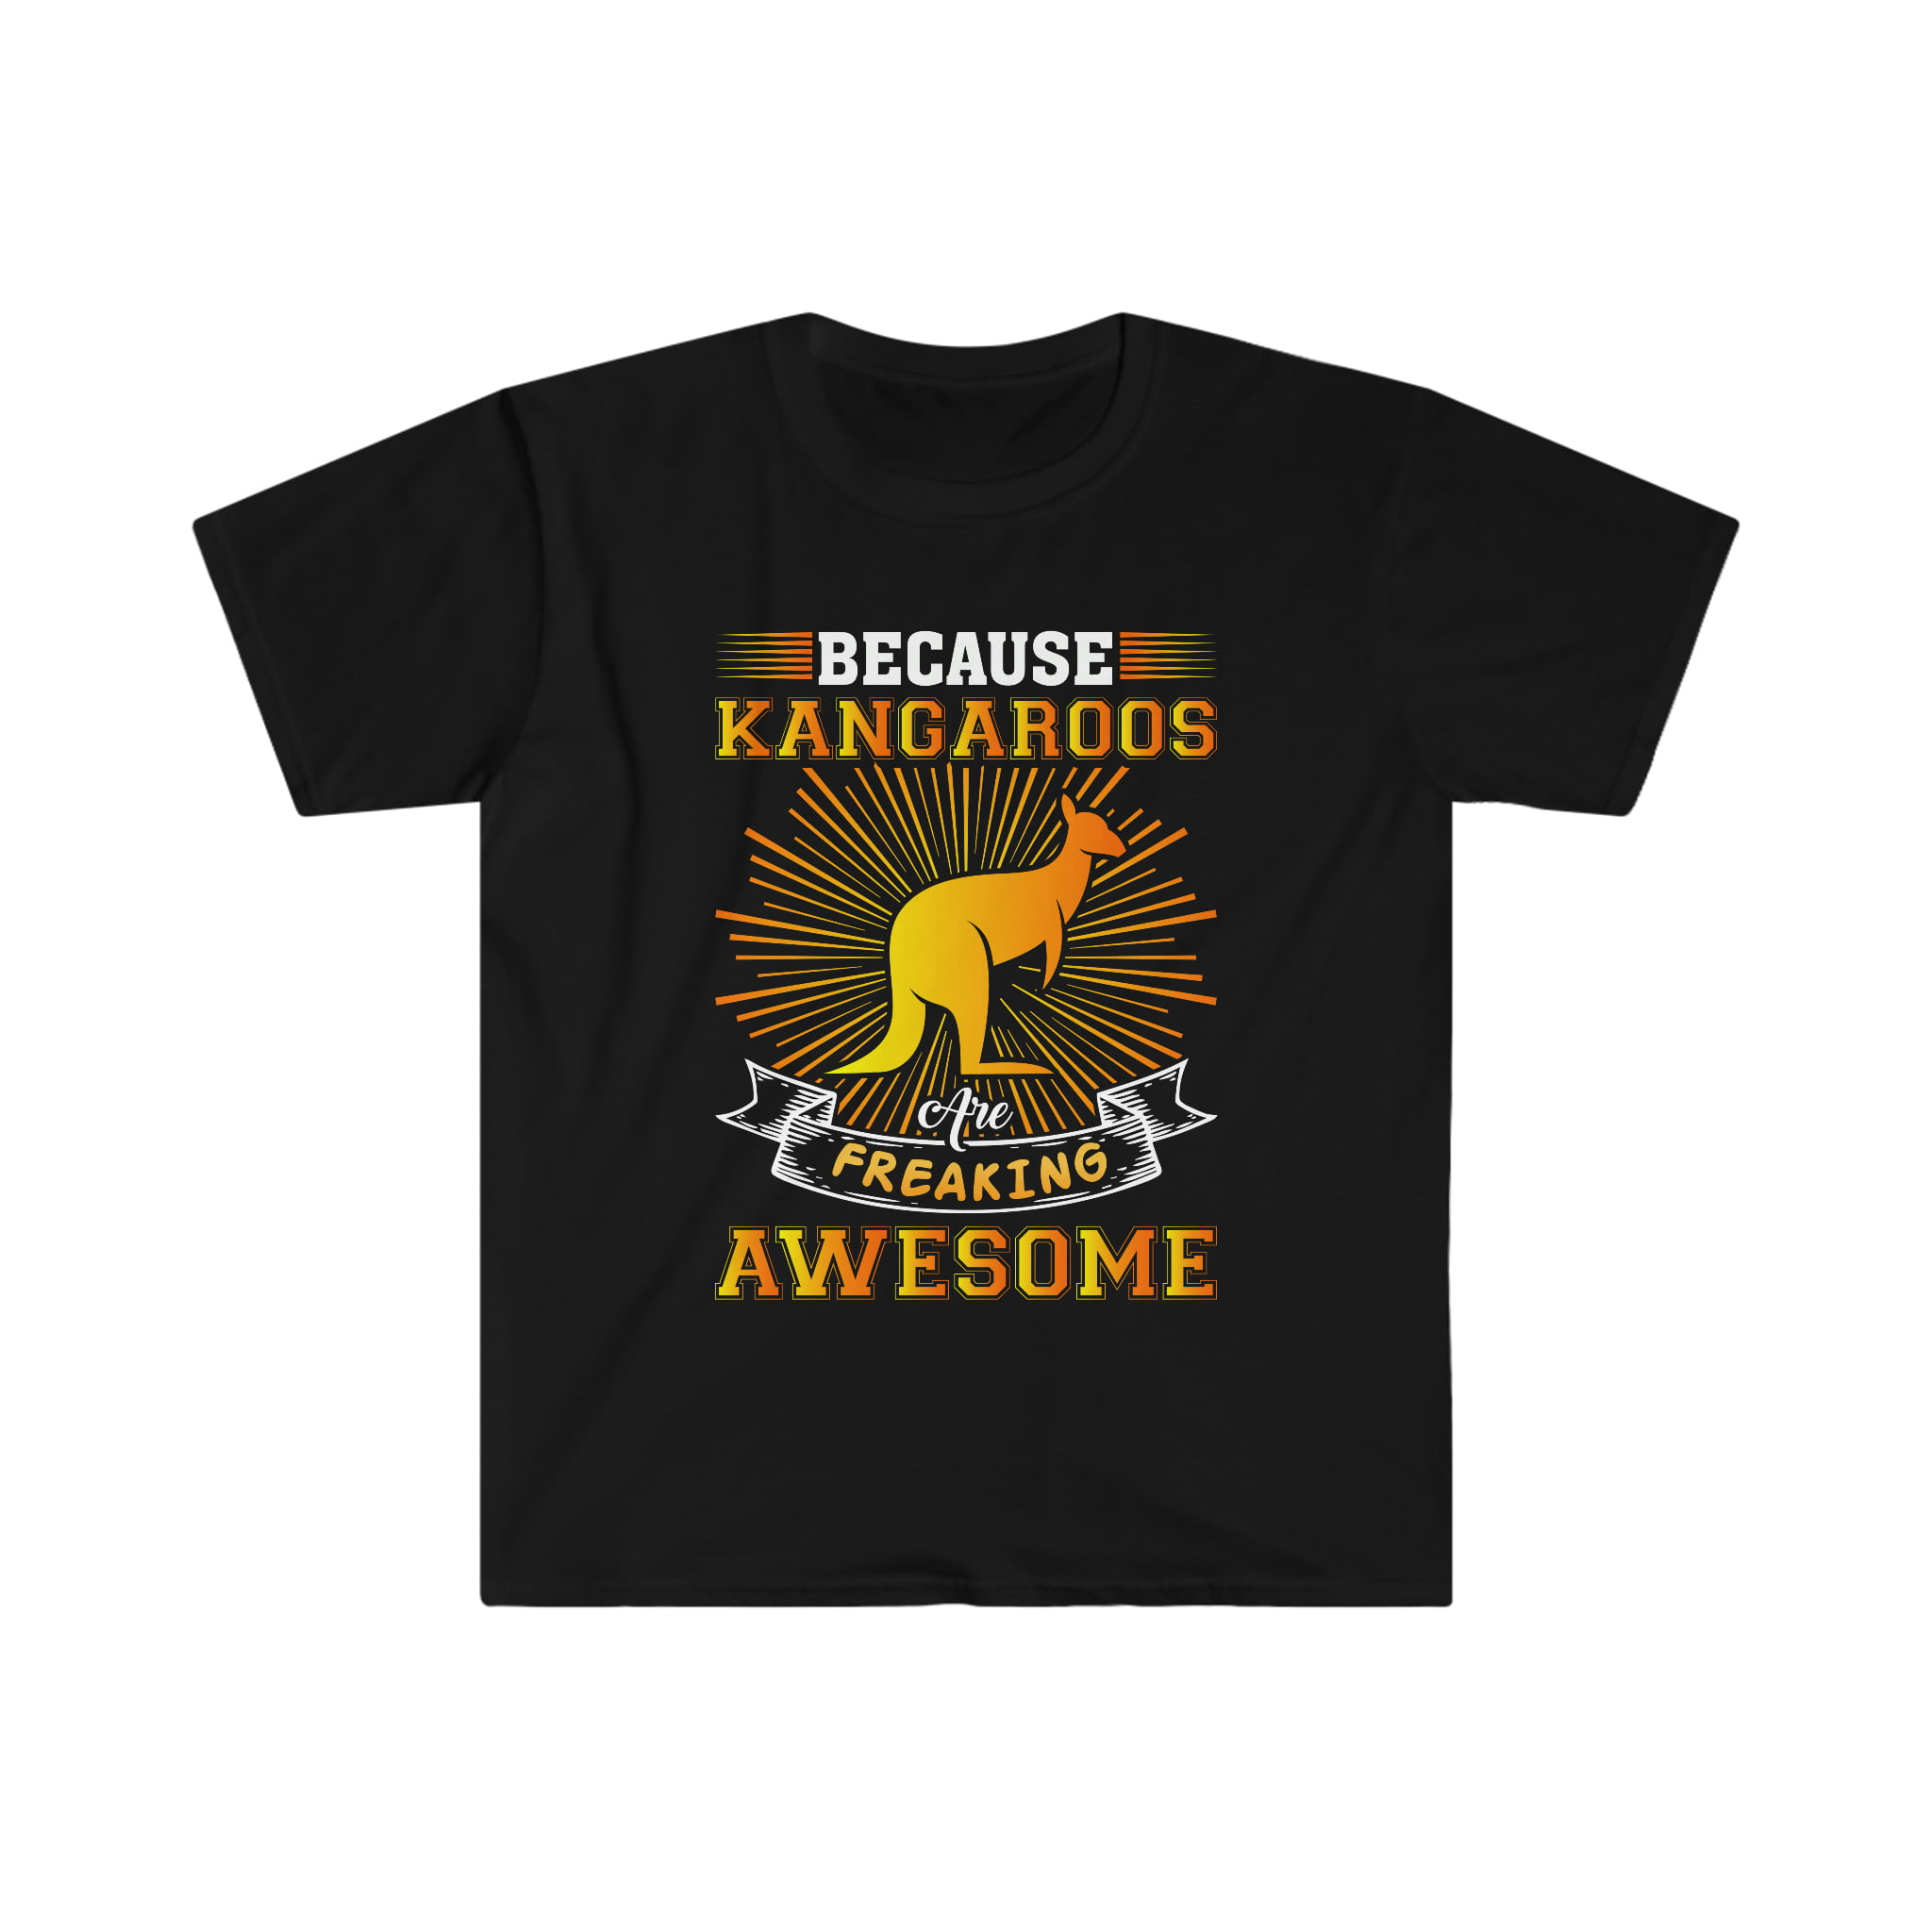 Kangaroo t-shirt Unisex - Kangaroos Are Gift TShirt Awesome Freaking